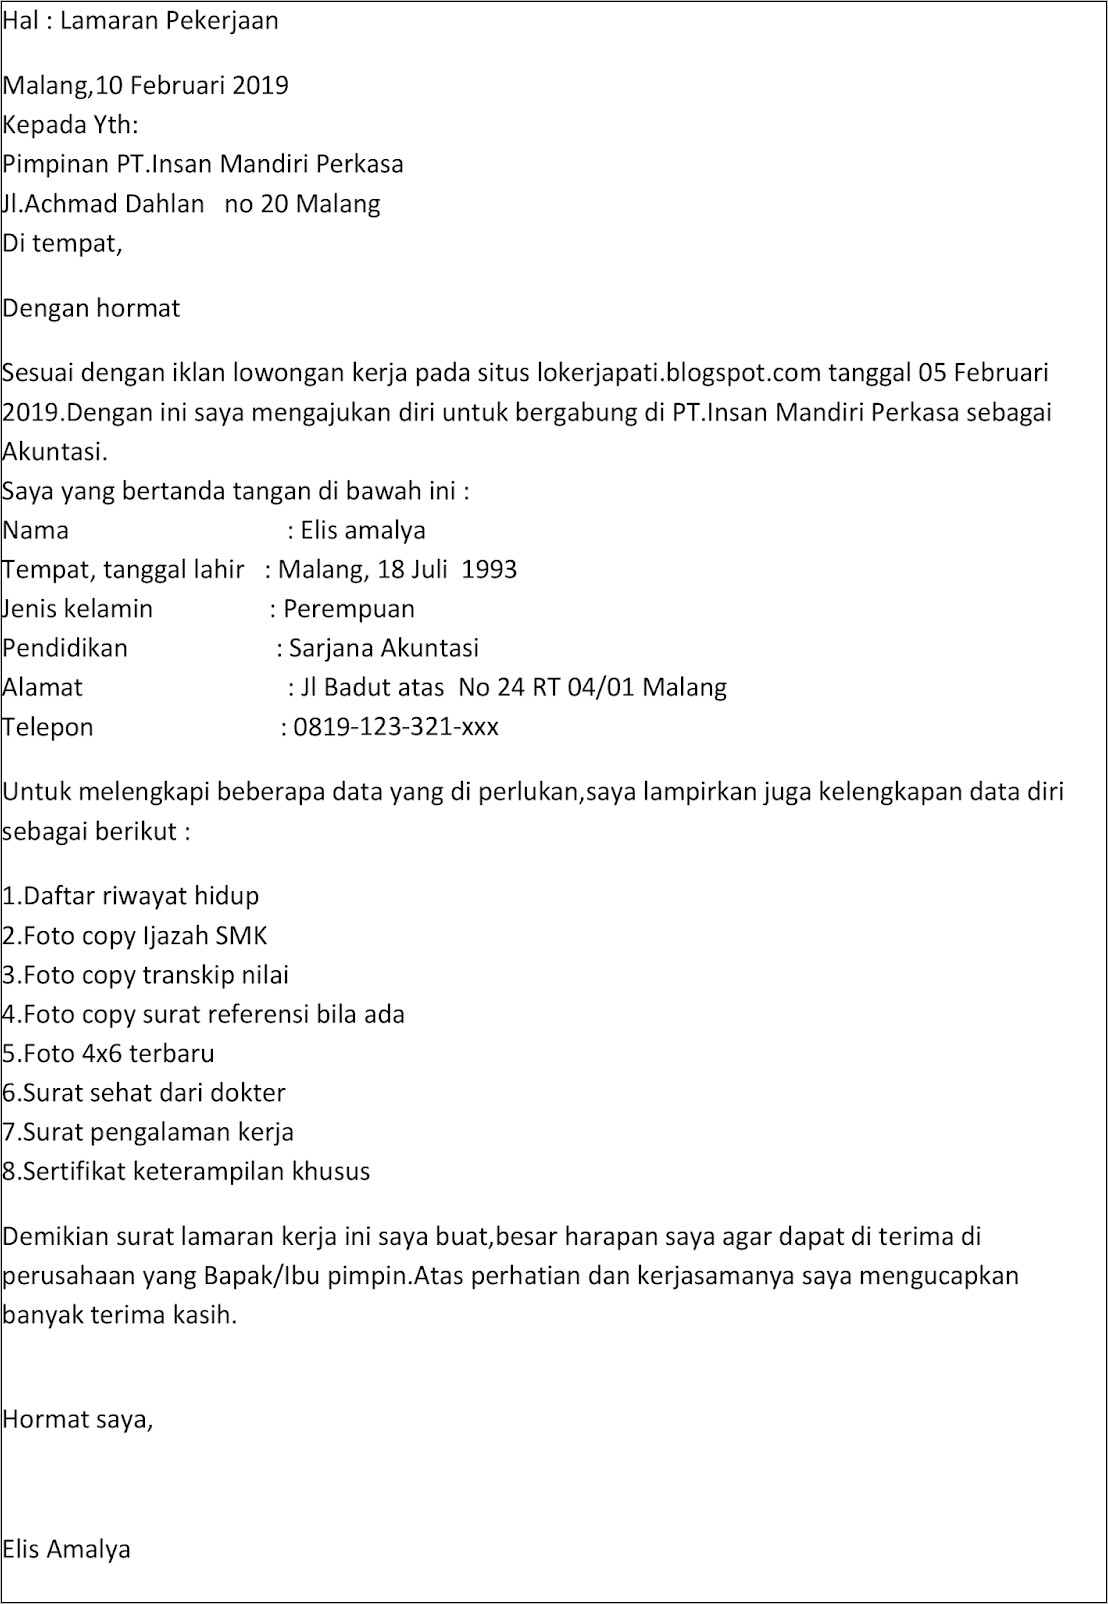 Contoh Surat Lamaran Pekerjaan Di Pt Sami Semarang